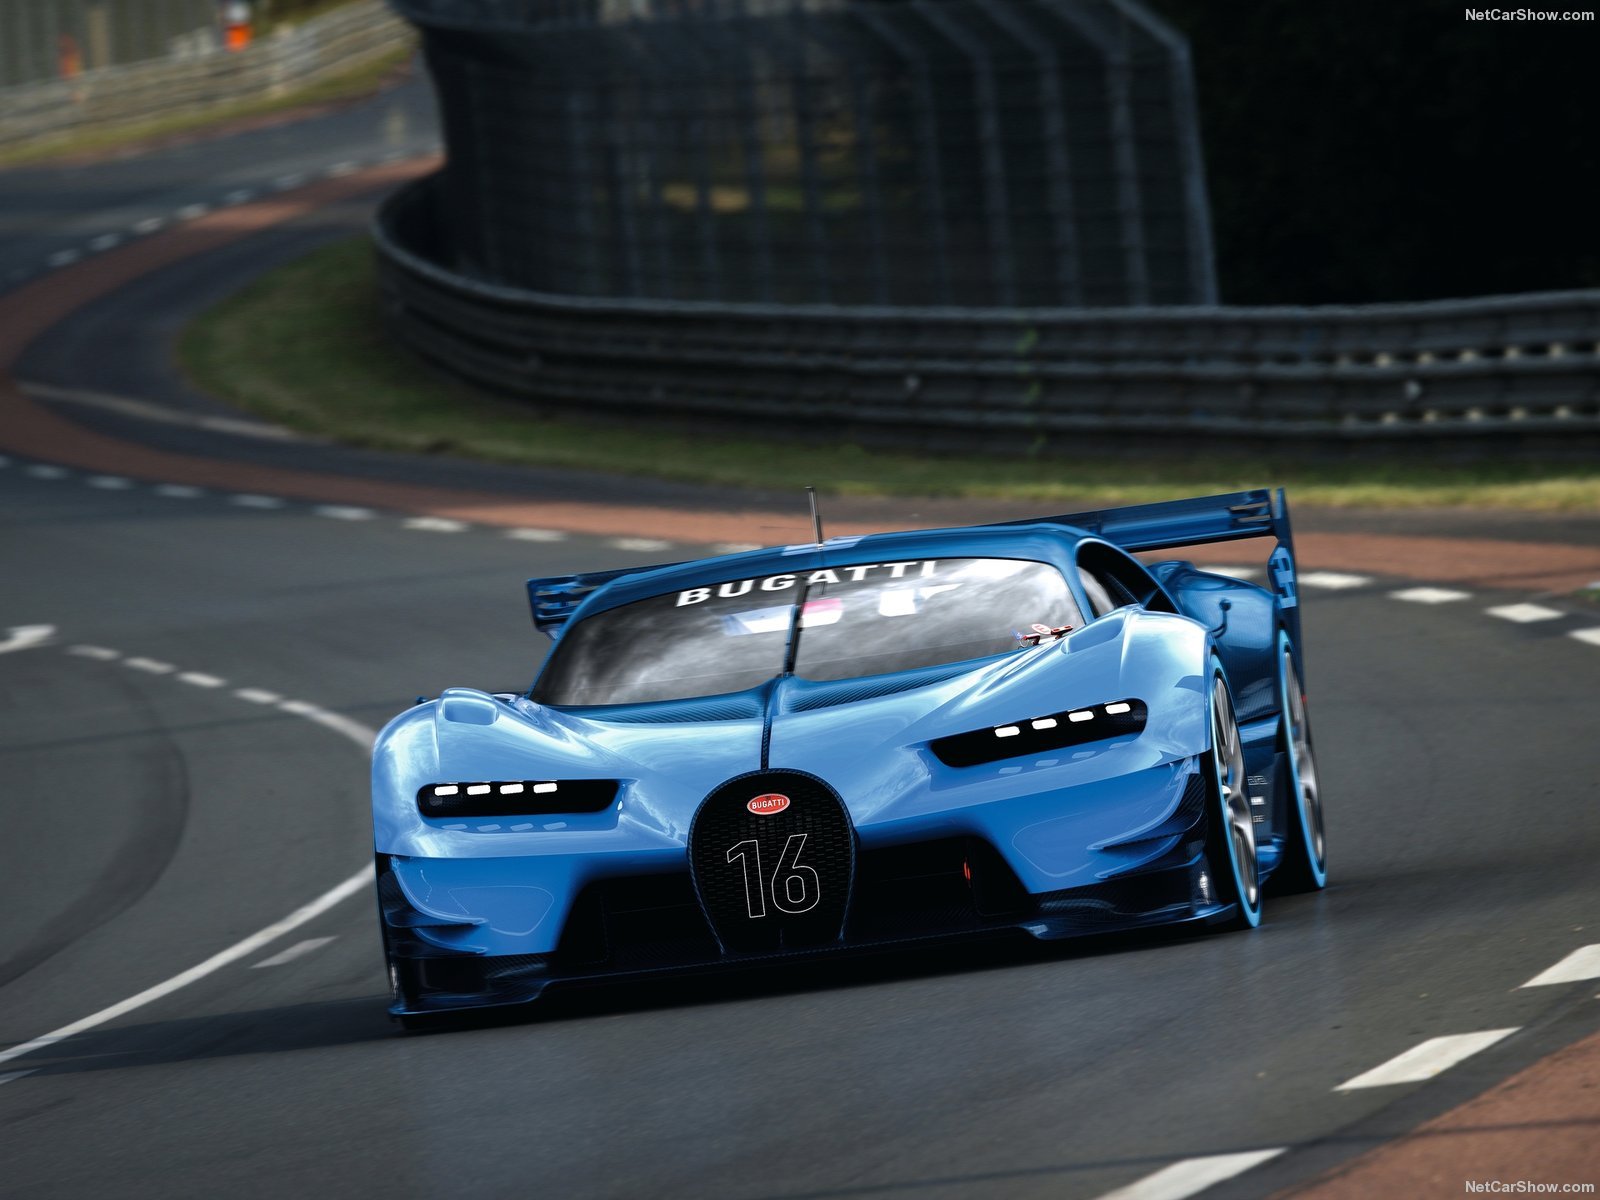 2015, Bugatti, Cars, Concept, Gran, Turismo, Videogames, Vision Wallpaper